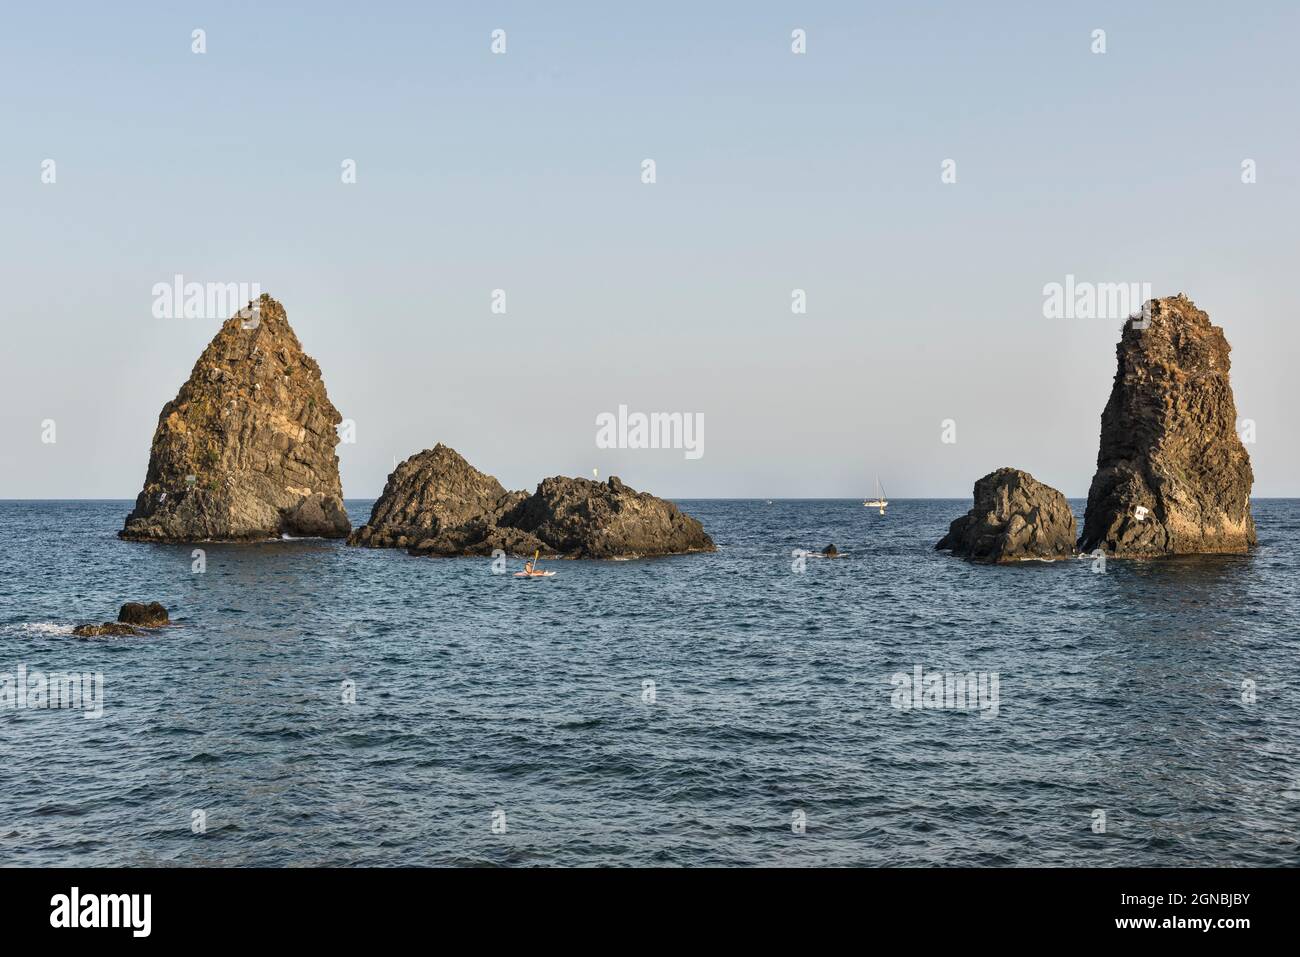 Die Faraglioni, eine Gruppe vulkanischer Basaltmeeres, stapeln sich vor Aci Trezza (Acitrezza), Sizilien, Italien. Auch bekannt als Isole Ciclopi (Zyklopen-Inseln) Stockfoto